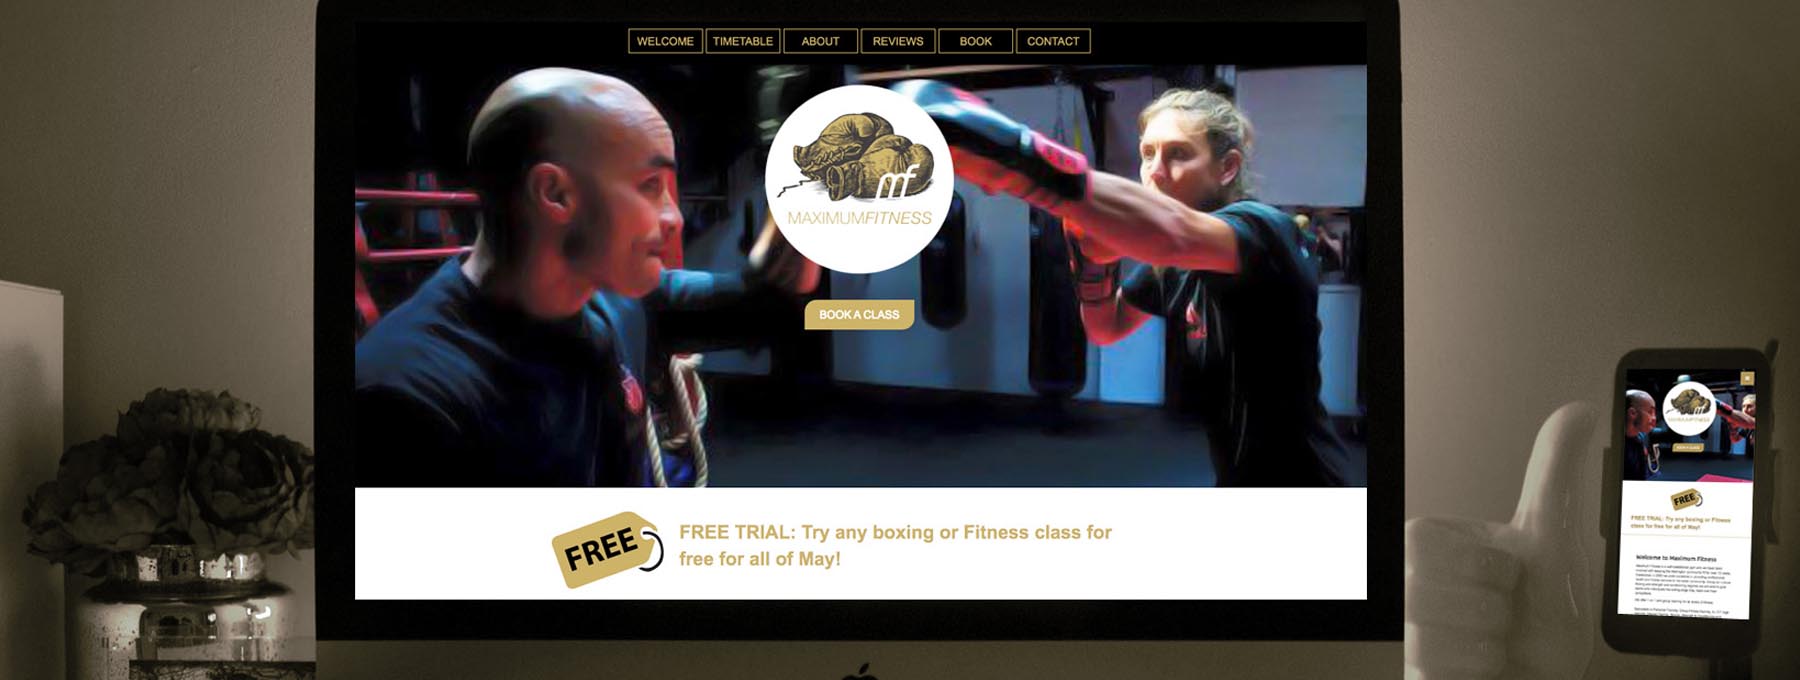 Maximum Fitness Website